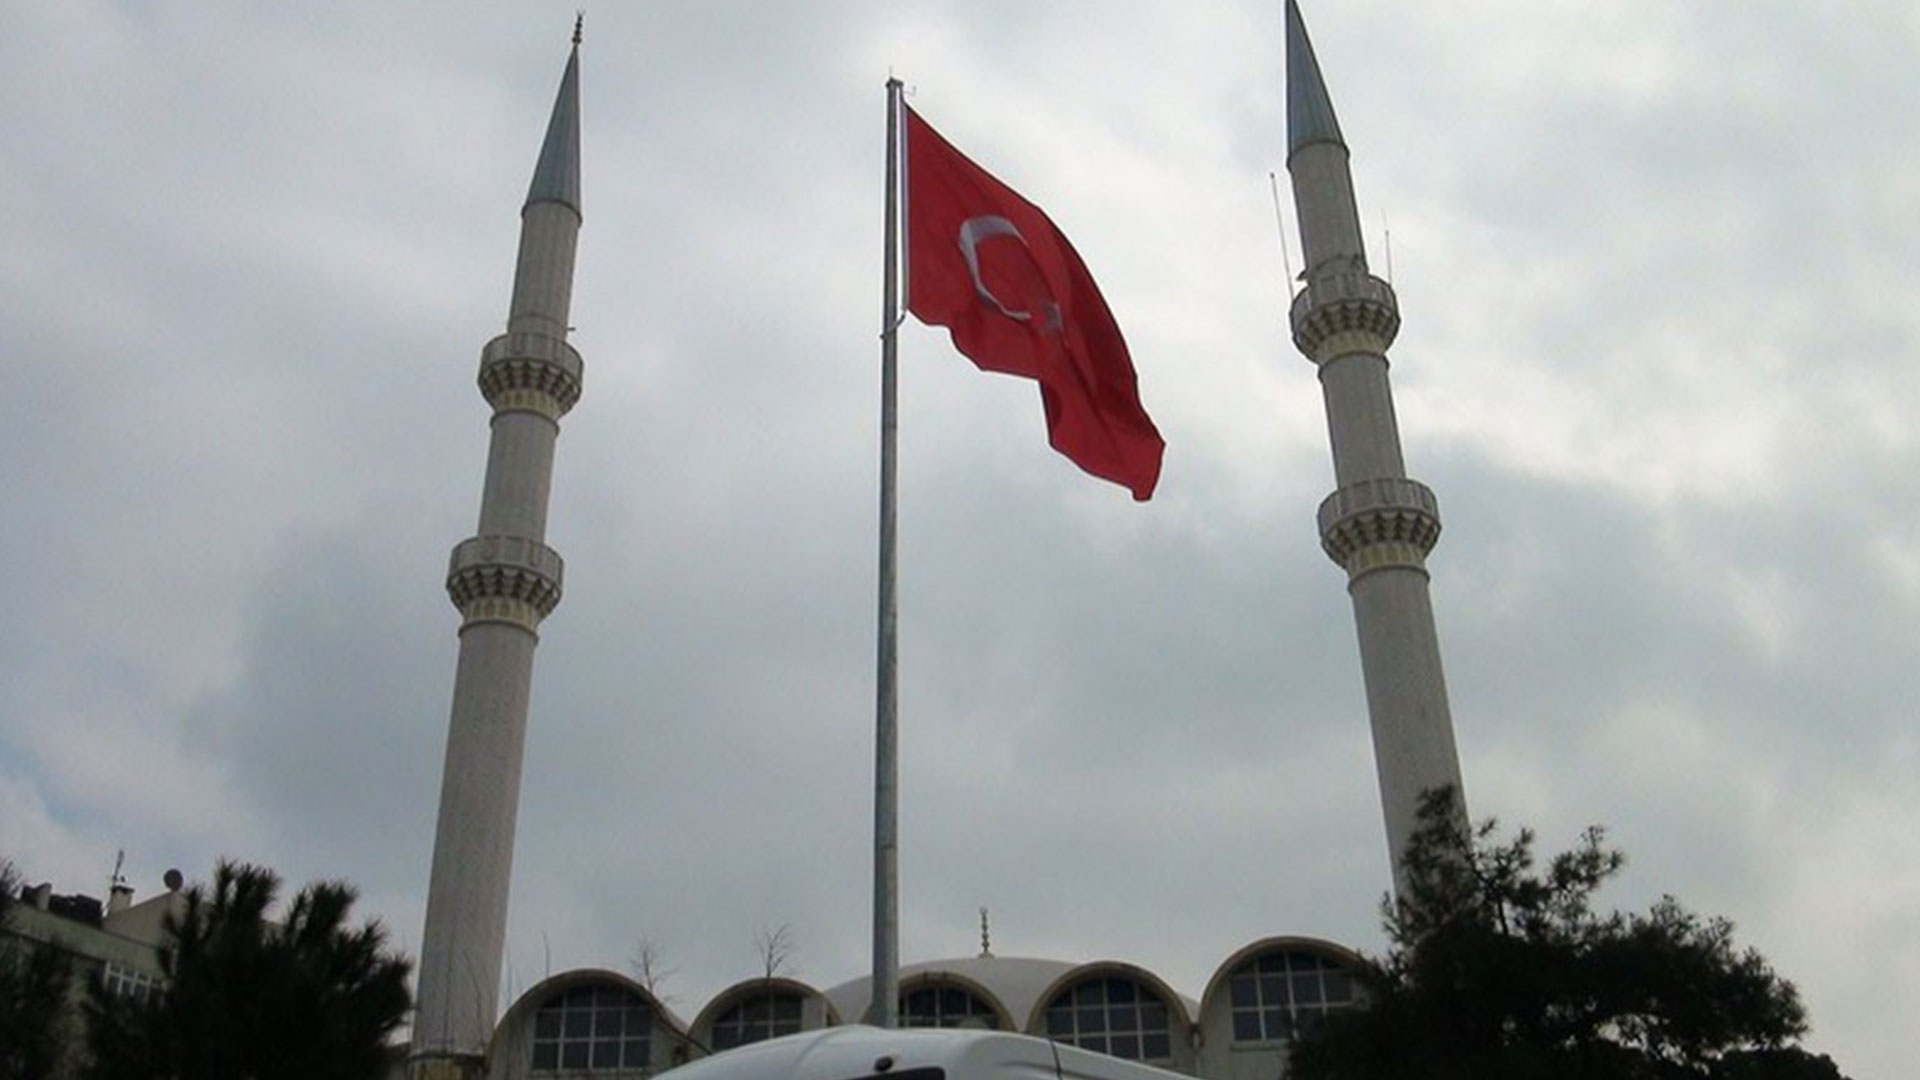 en guzel turk bayrakli manzarali camiler 6